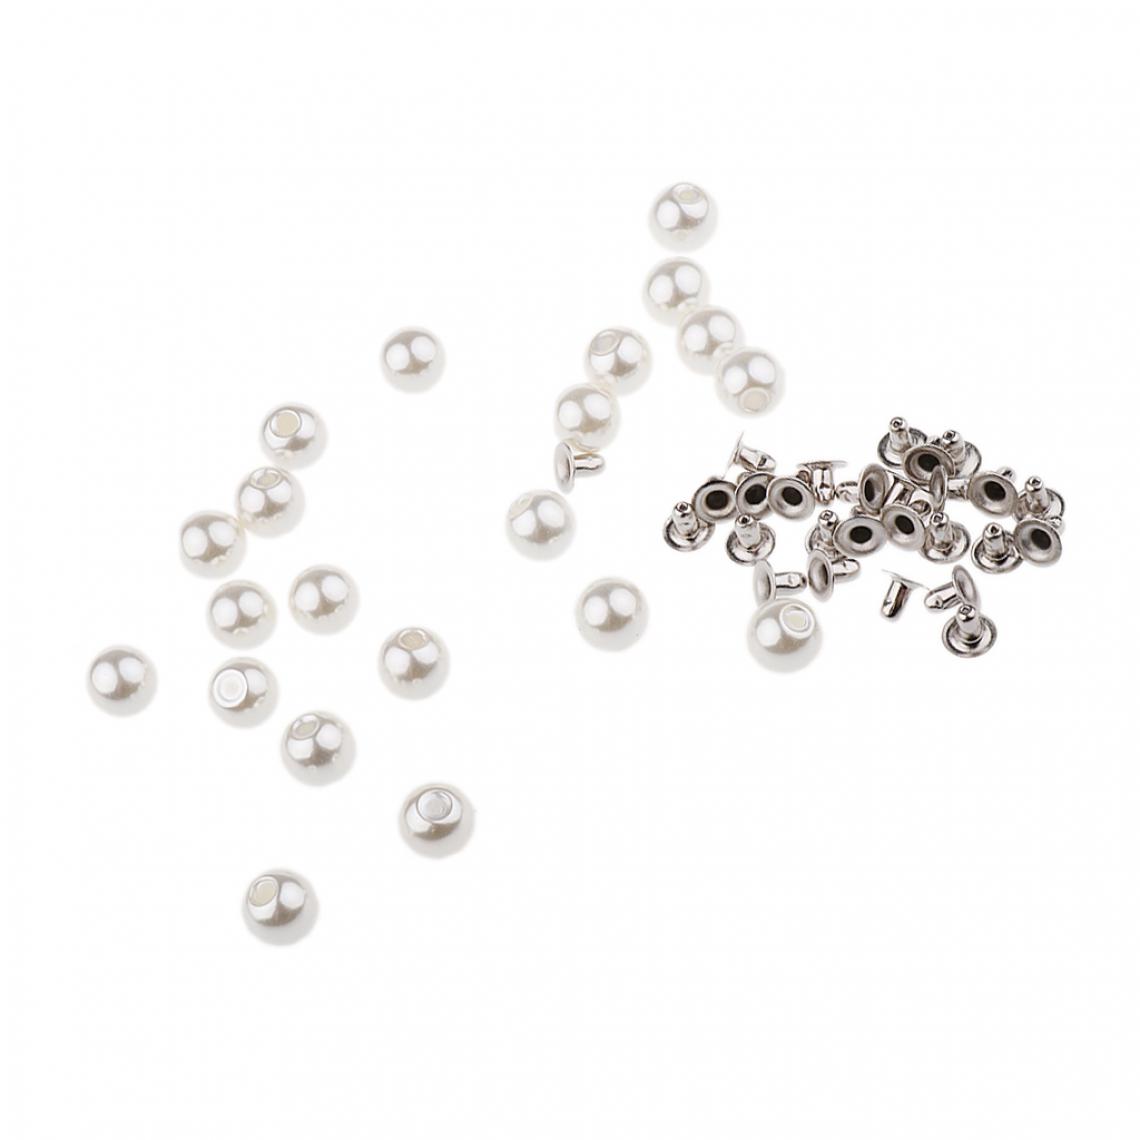 marque generique - 20 sets perle perles boutons rivet boutons accessoires de vêtements argent - Boulonnerie